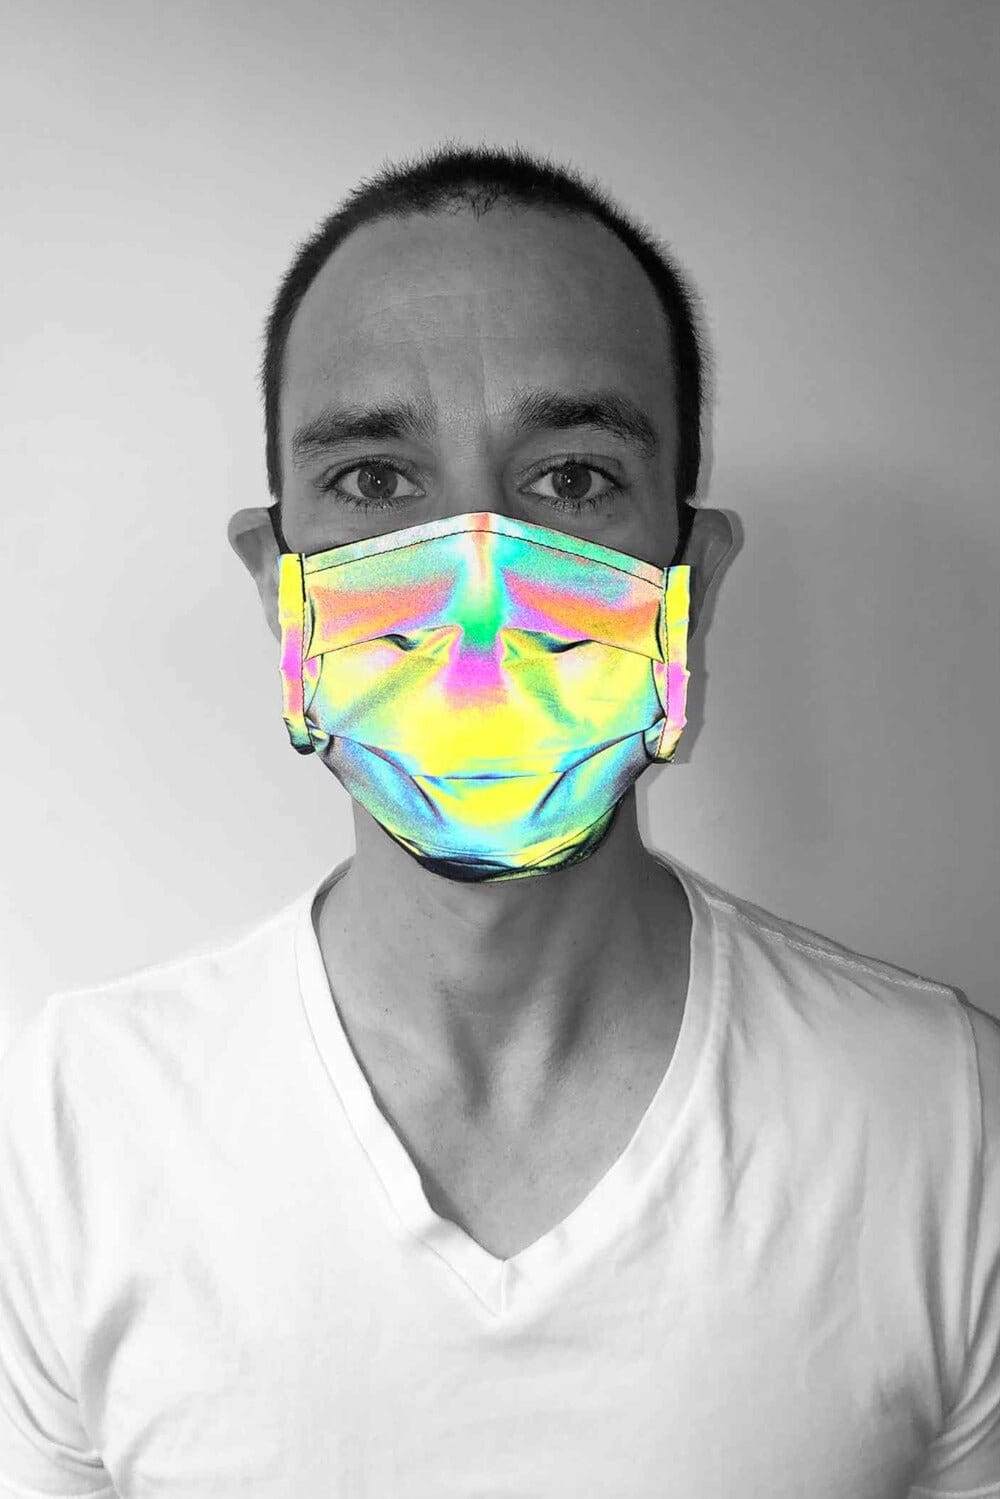 Reflective Cyberpunk streetwear face mask by Love Khaos